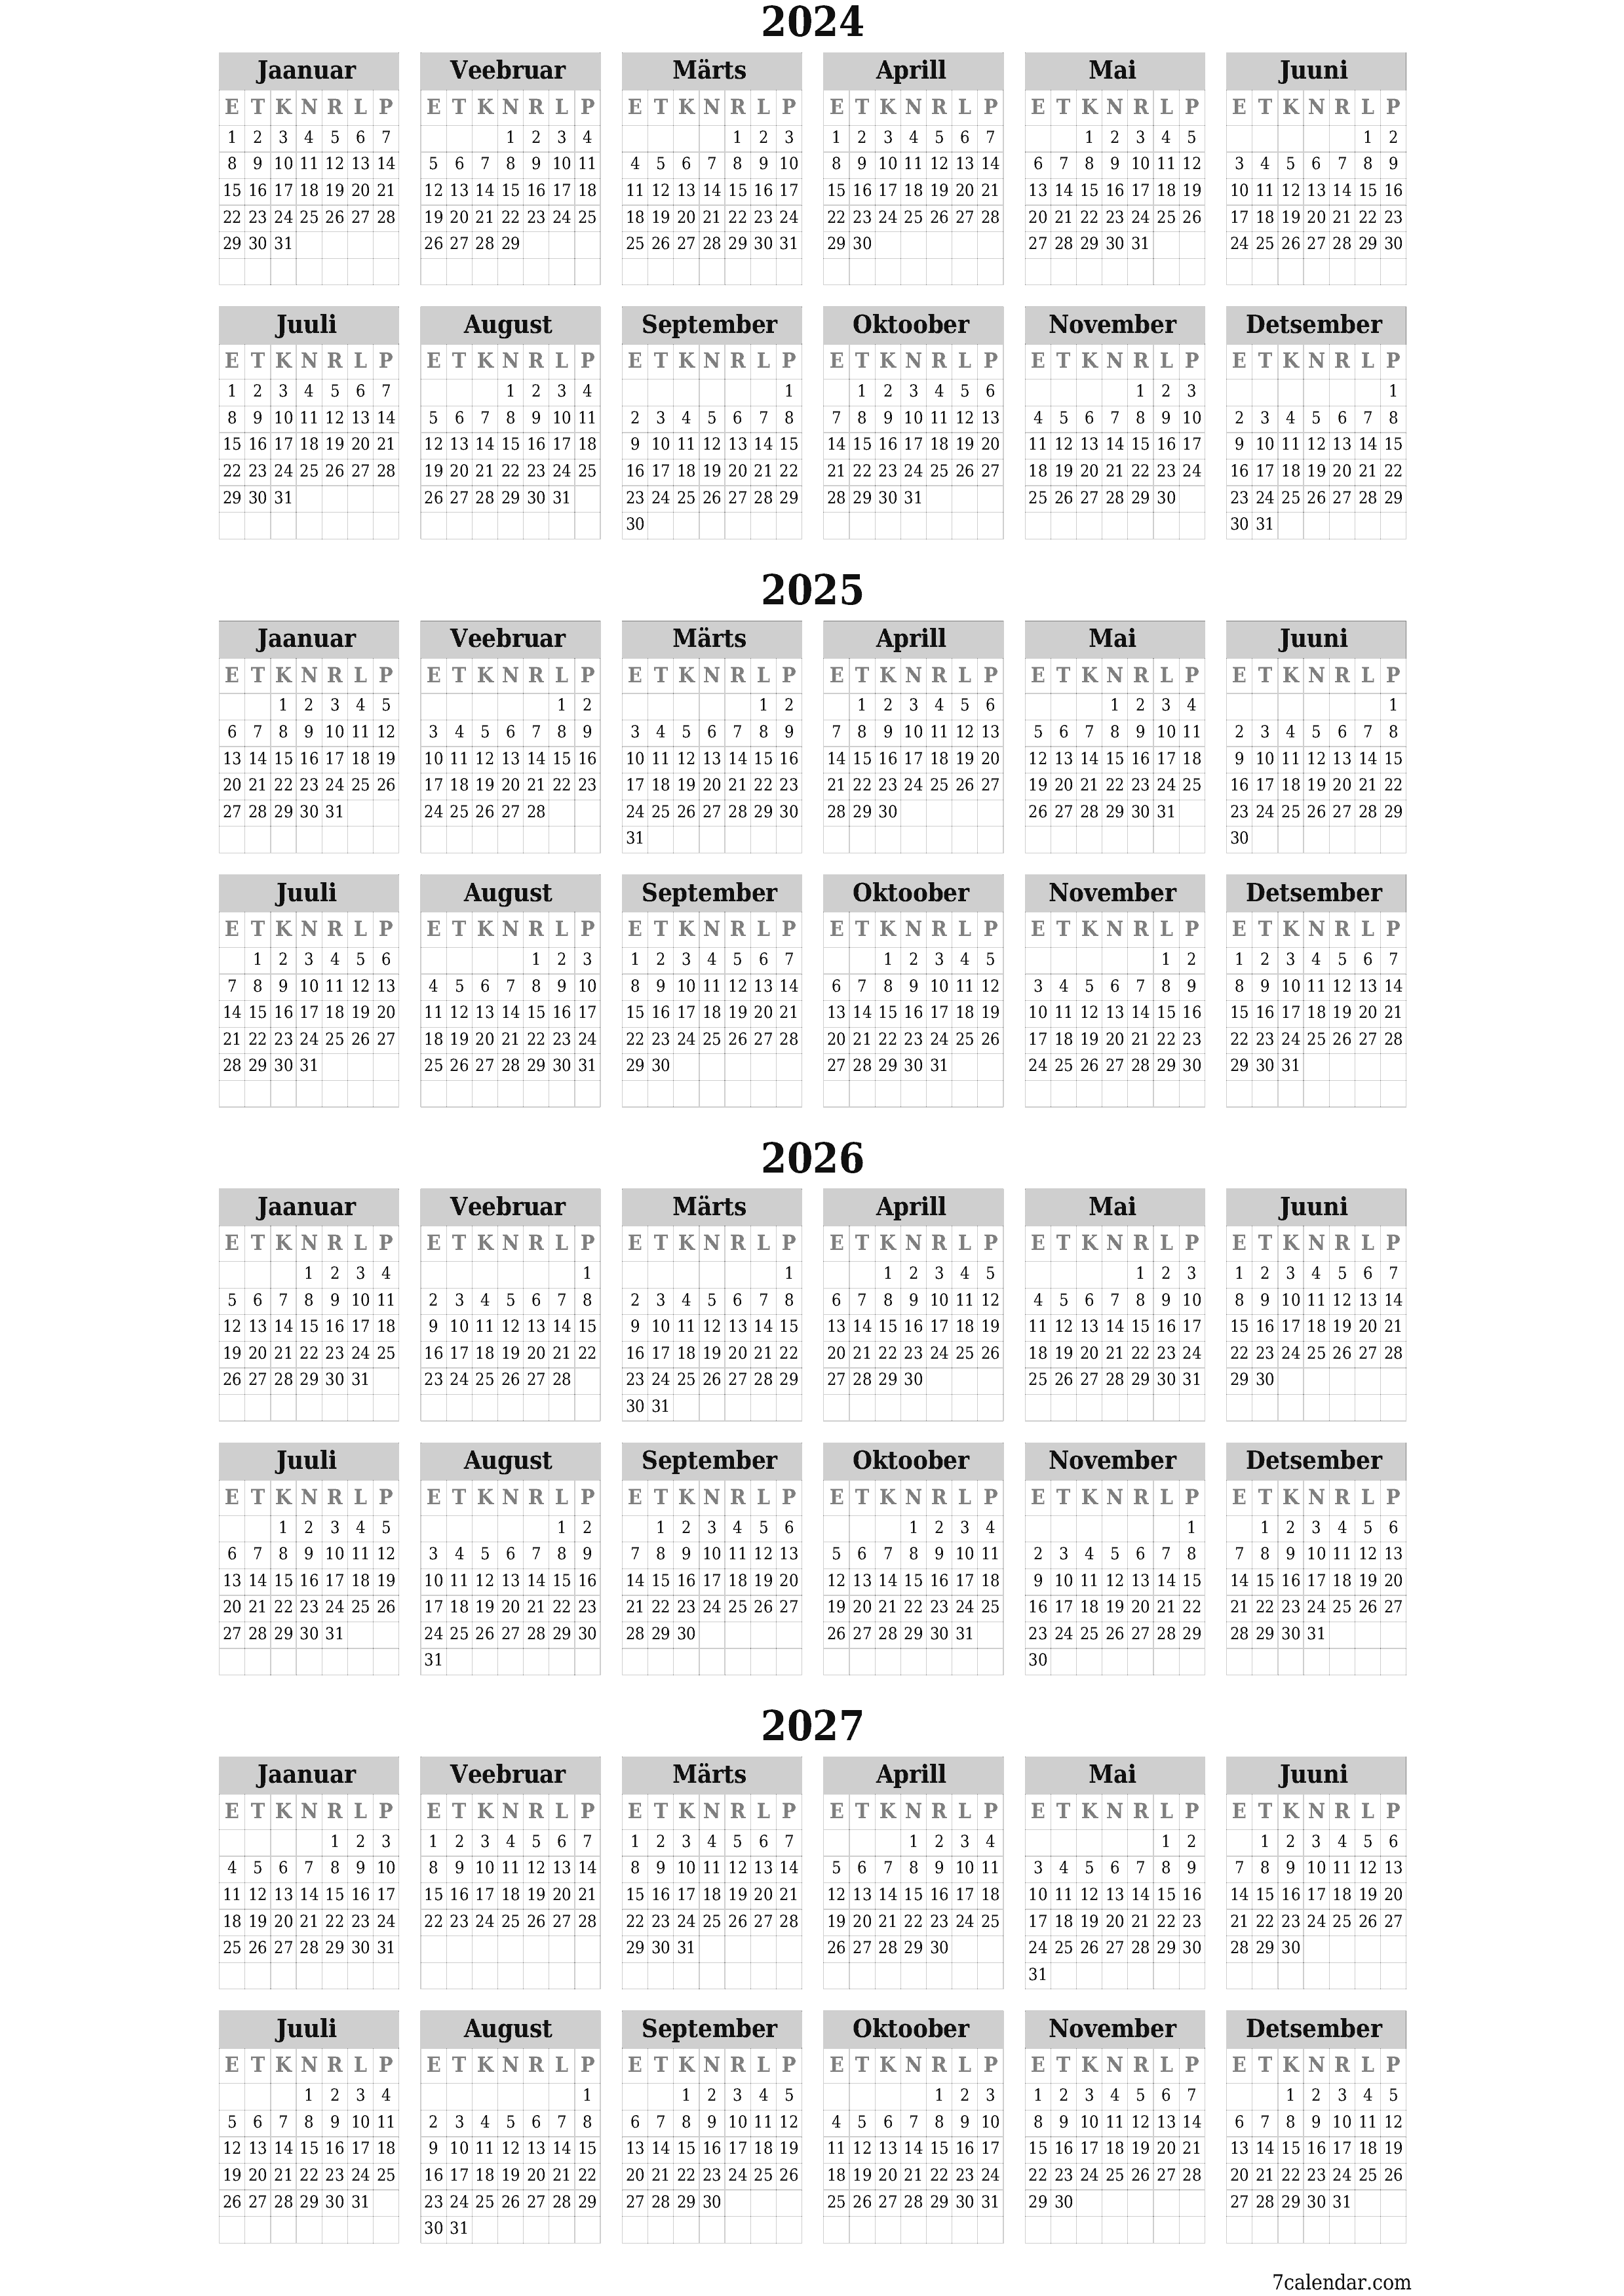 prinditav seina kalendri mall tasuta vertikaalne Iga-aastane kalender Detsember (Dets) 2024